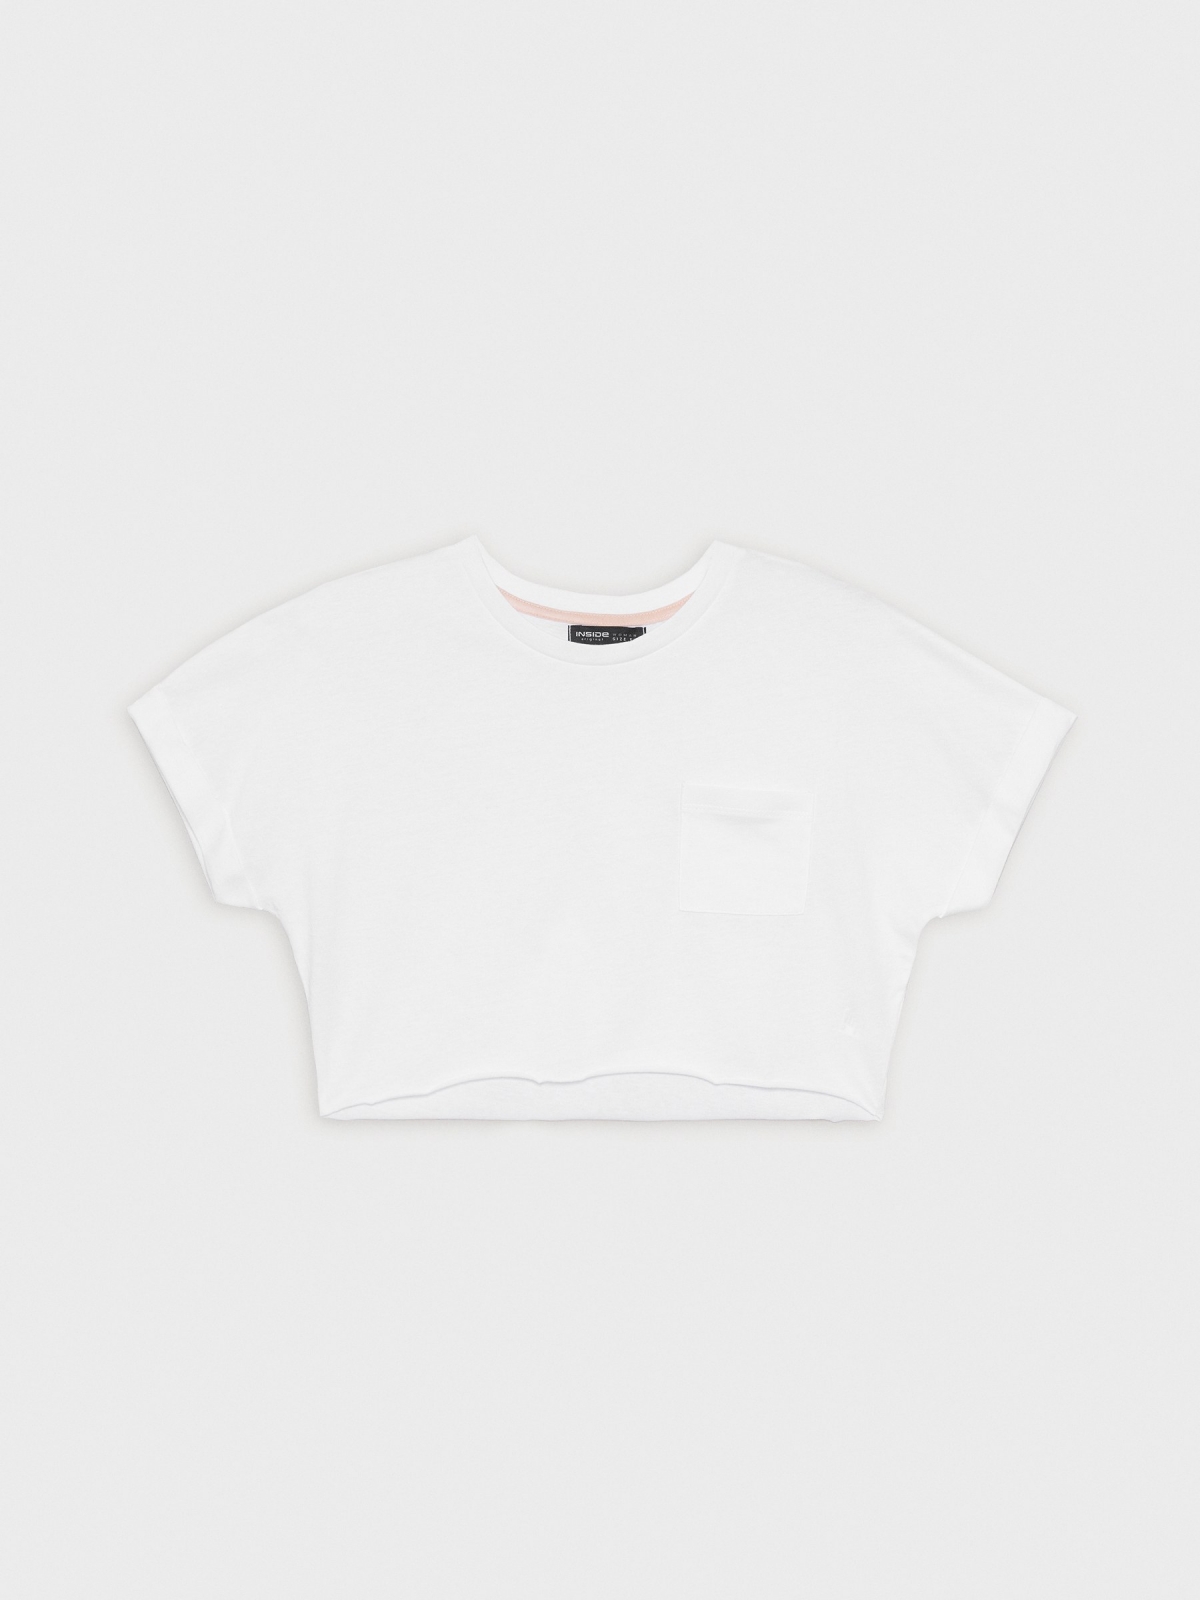  Camiseta crop top básica blanco